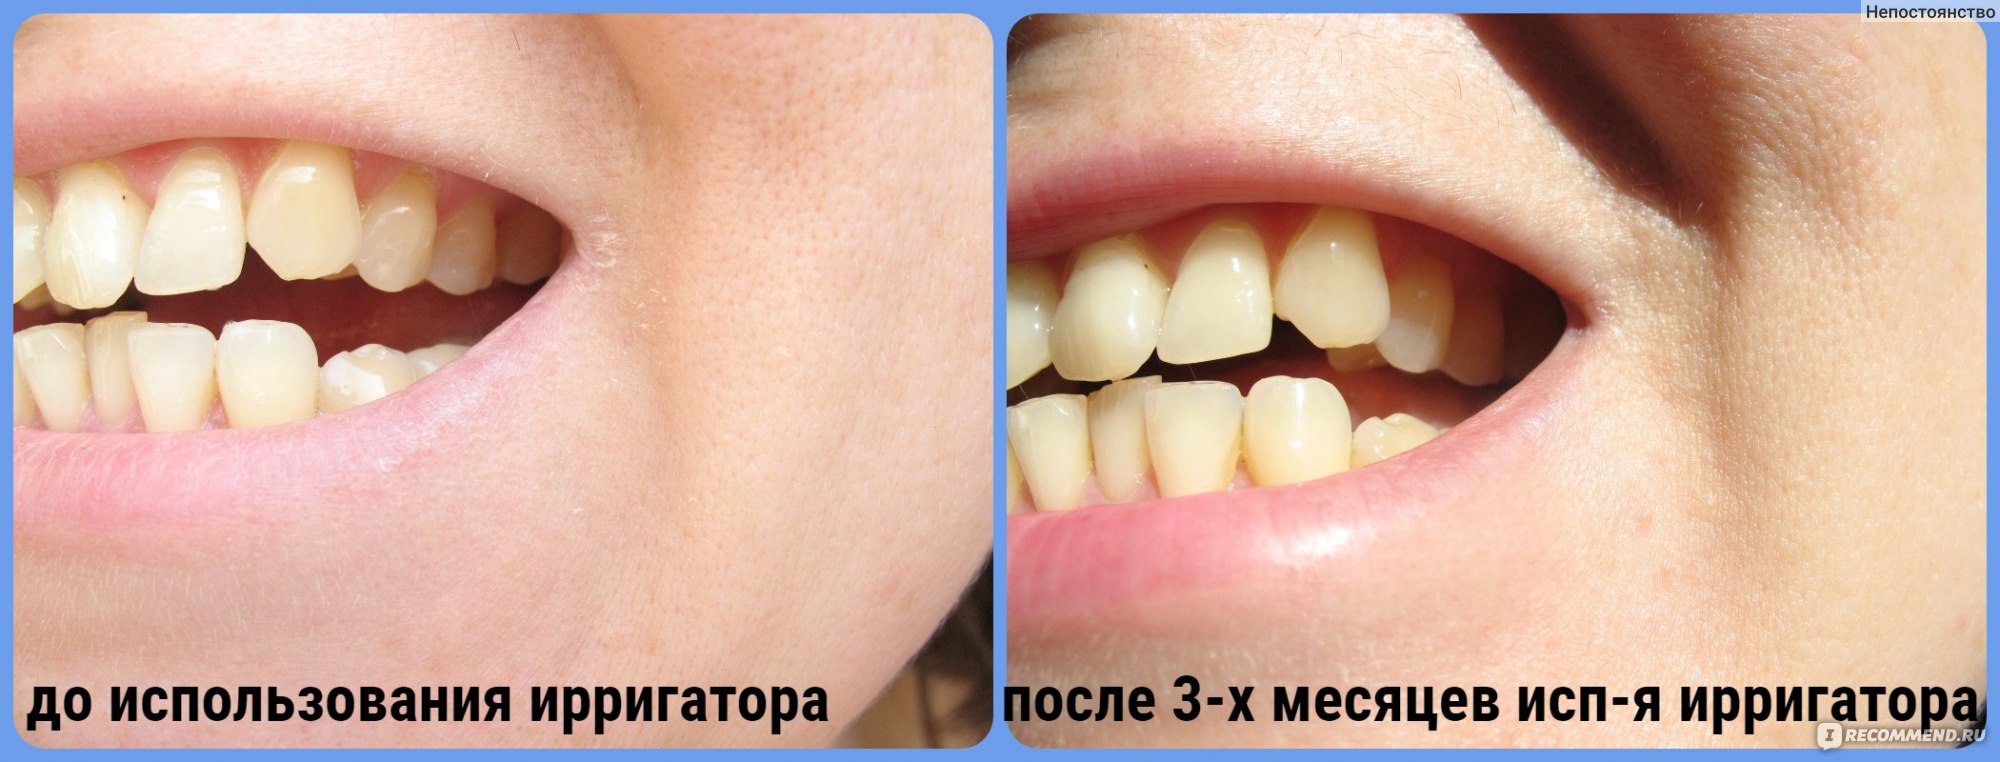 Зубы до и после ирригатора